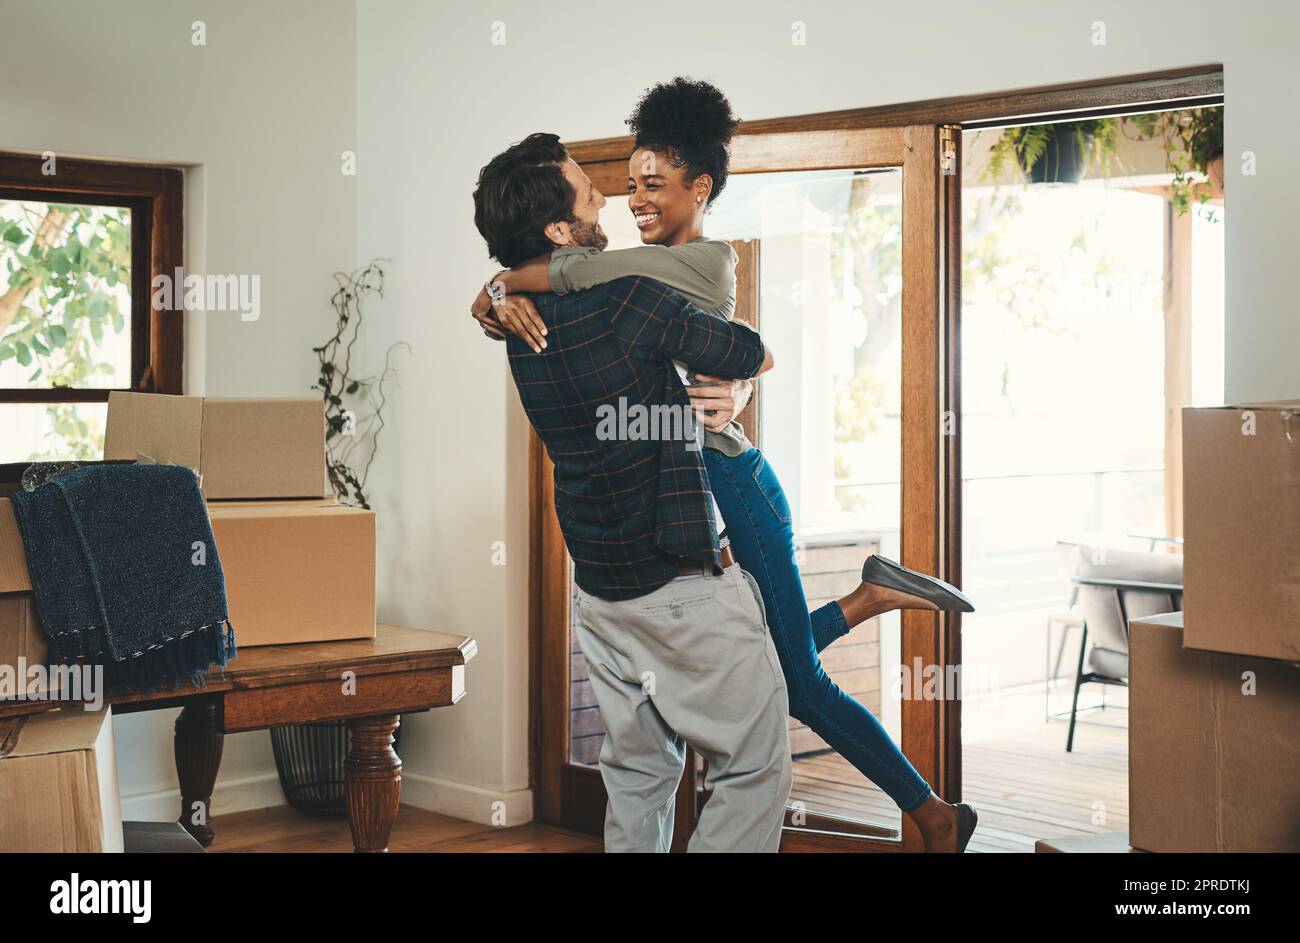 Hausbesitzer-Paar feiert, umarmt und jubelt in einem neuen Haus als Immobilieninvestoren, -Käufer und -Besitzer. Lustiger Mann und Frau aus verschiedenen Rassen, die aufgeregt, glücklich und fröhlich aussehen, während sie sich an Boxen umarmen Stockfoto